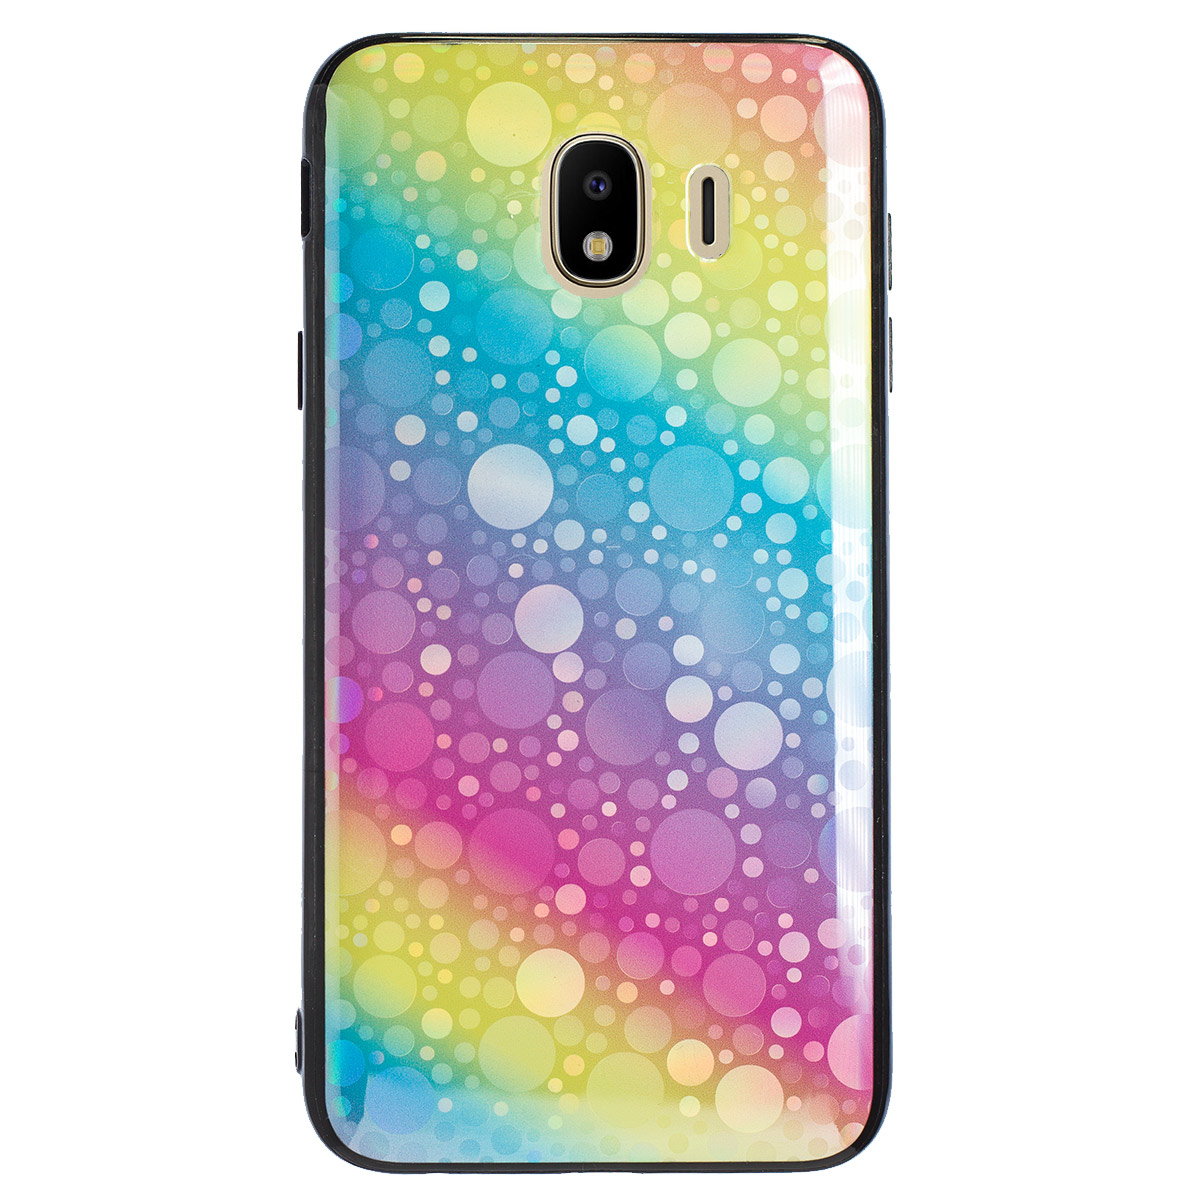 Husa Oglinda Samsung Galaxy J4 2018, Rainbow thumb